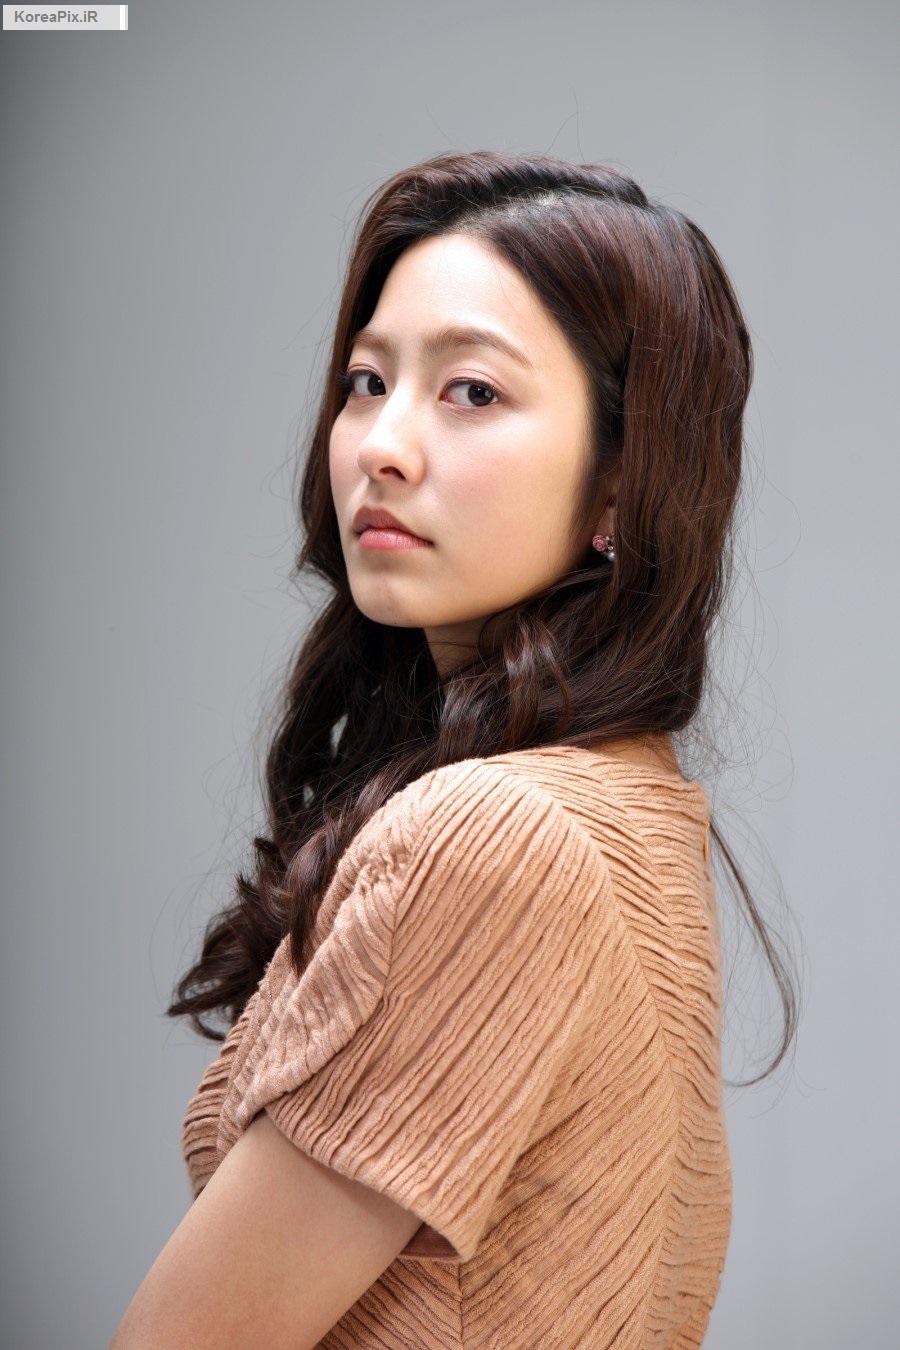 عکس های پارک سه یونگ بازیگر نقش شاهزاده نوگوک در سریال سرنوشت 1